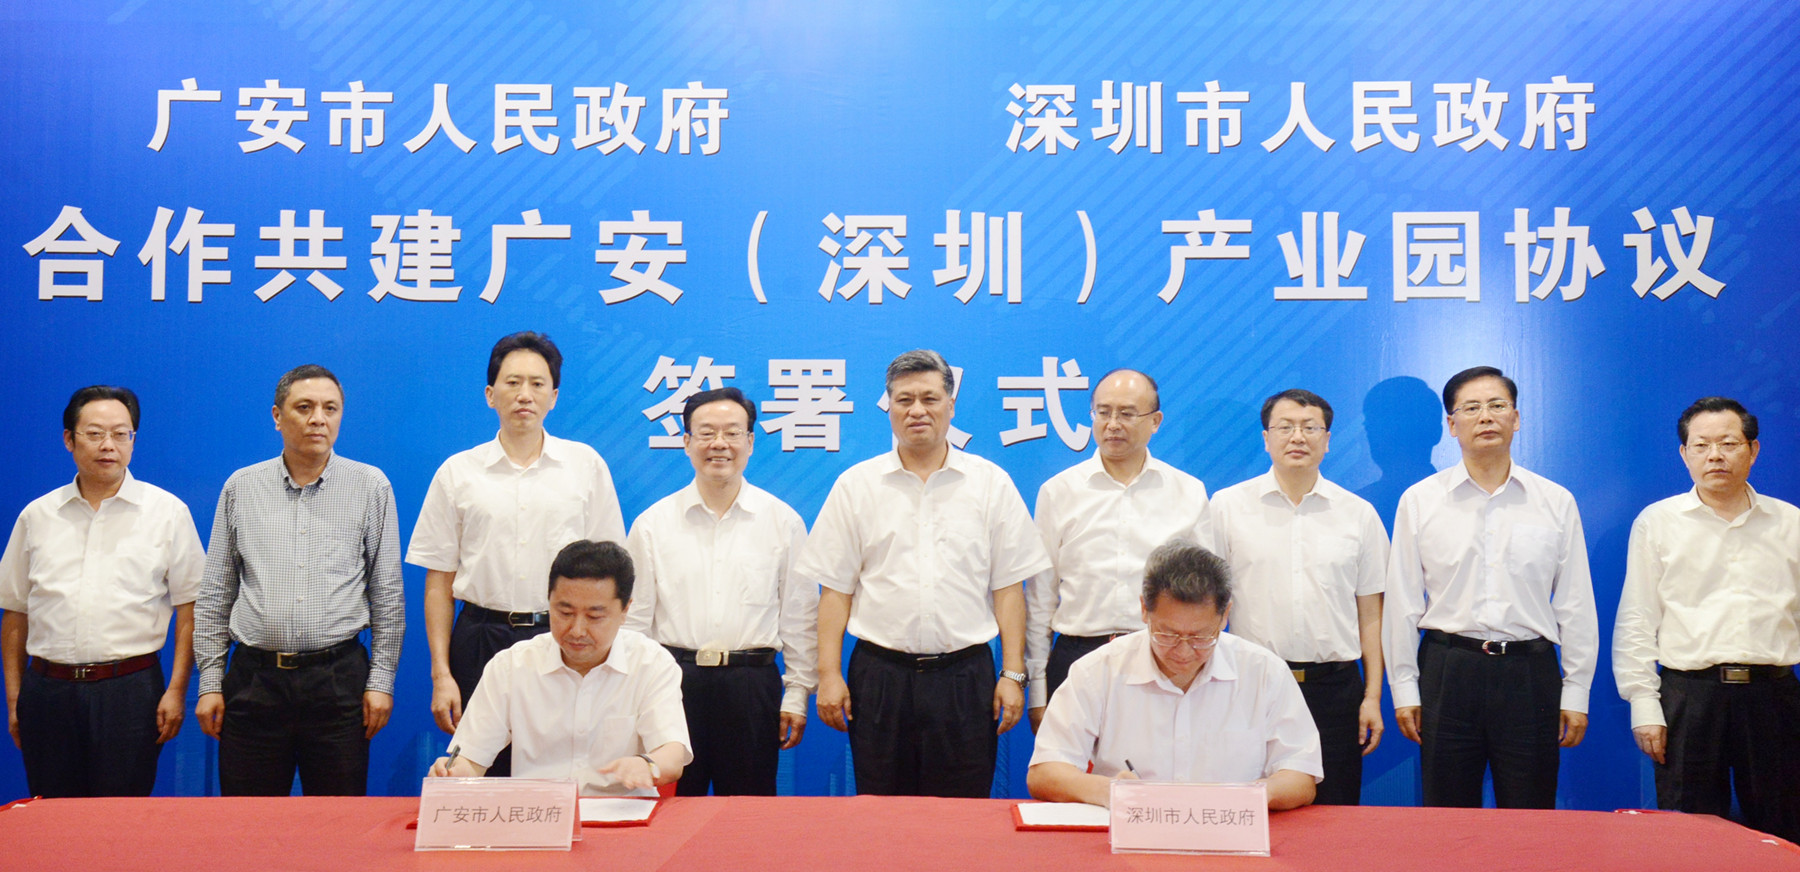 深圳、廣安兩市簽署《合作共建廣安（深圳）產業園協定》